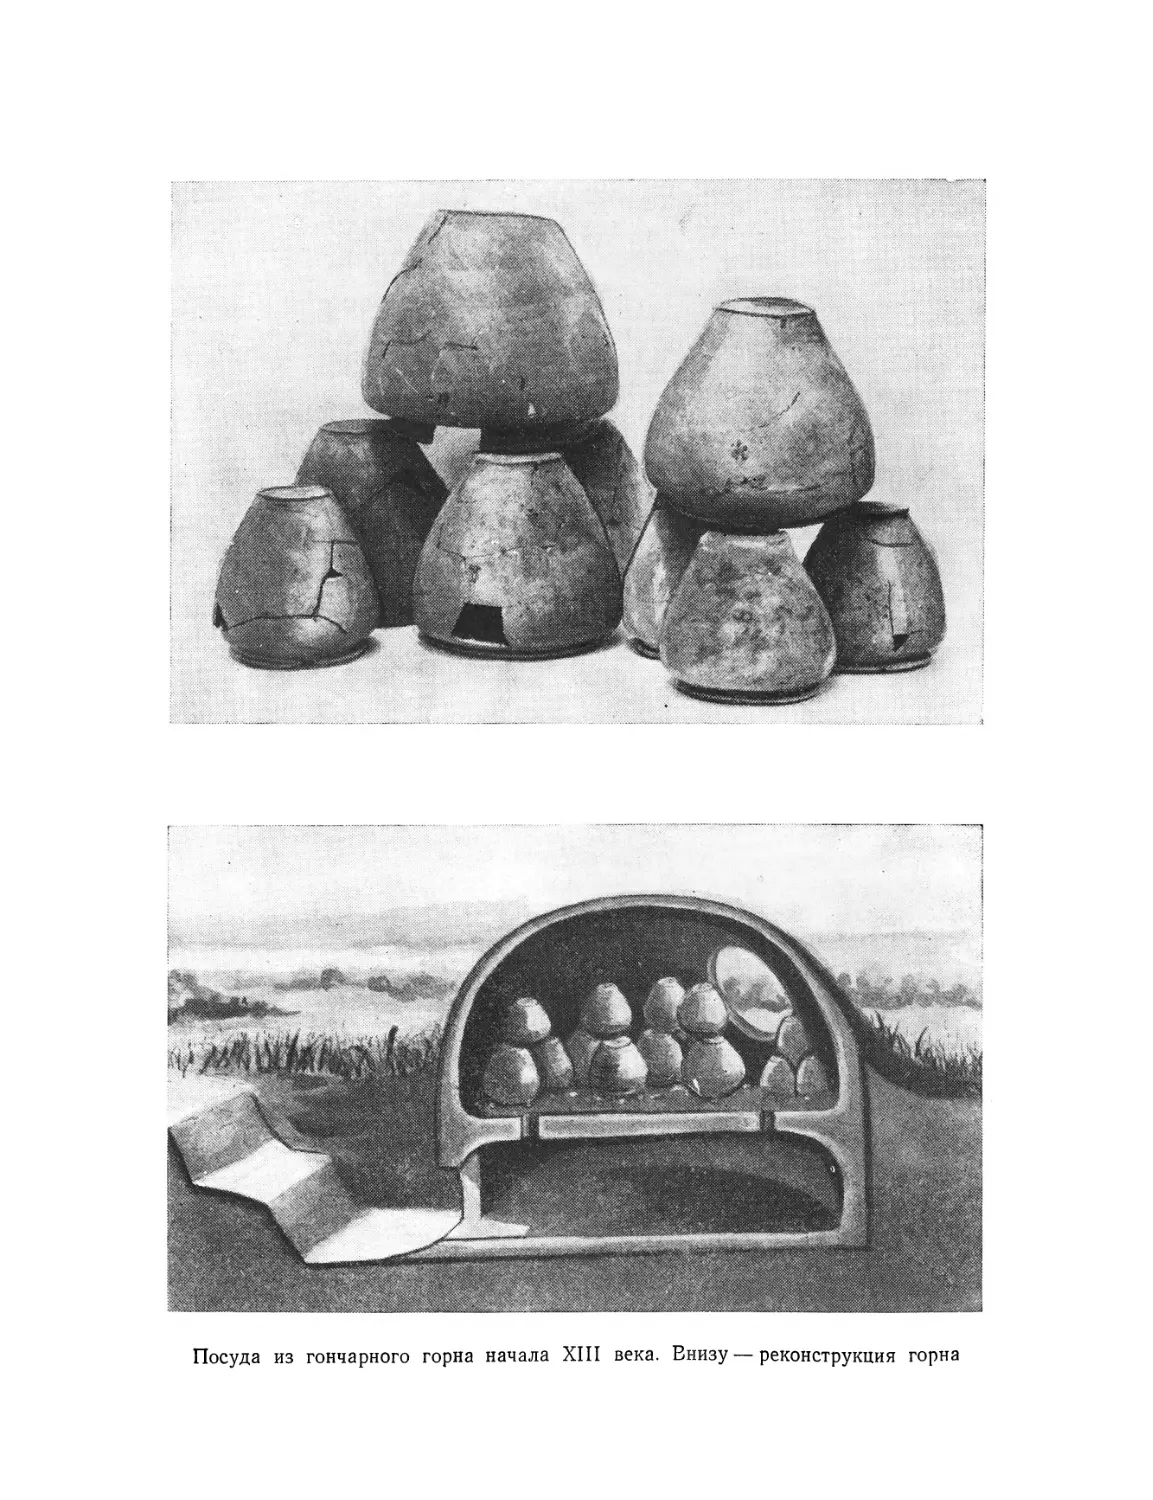 Вклейка. Посуда из гончарного горна начала XIII века